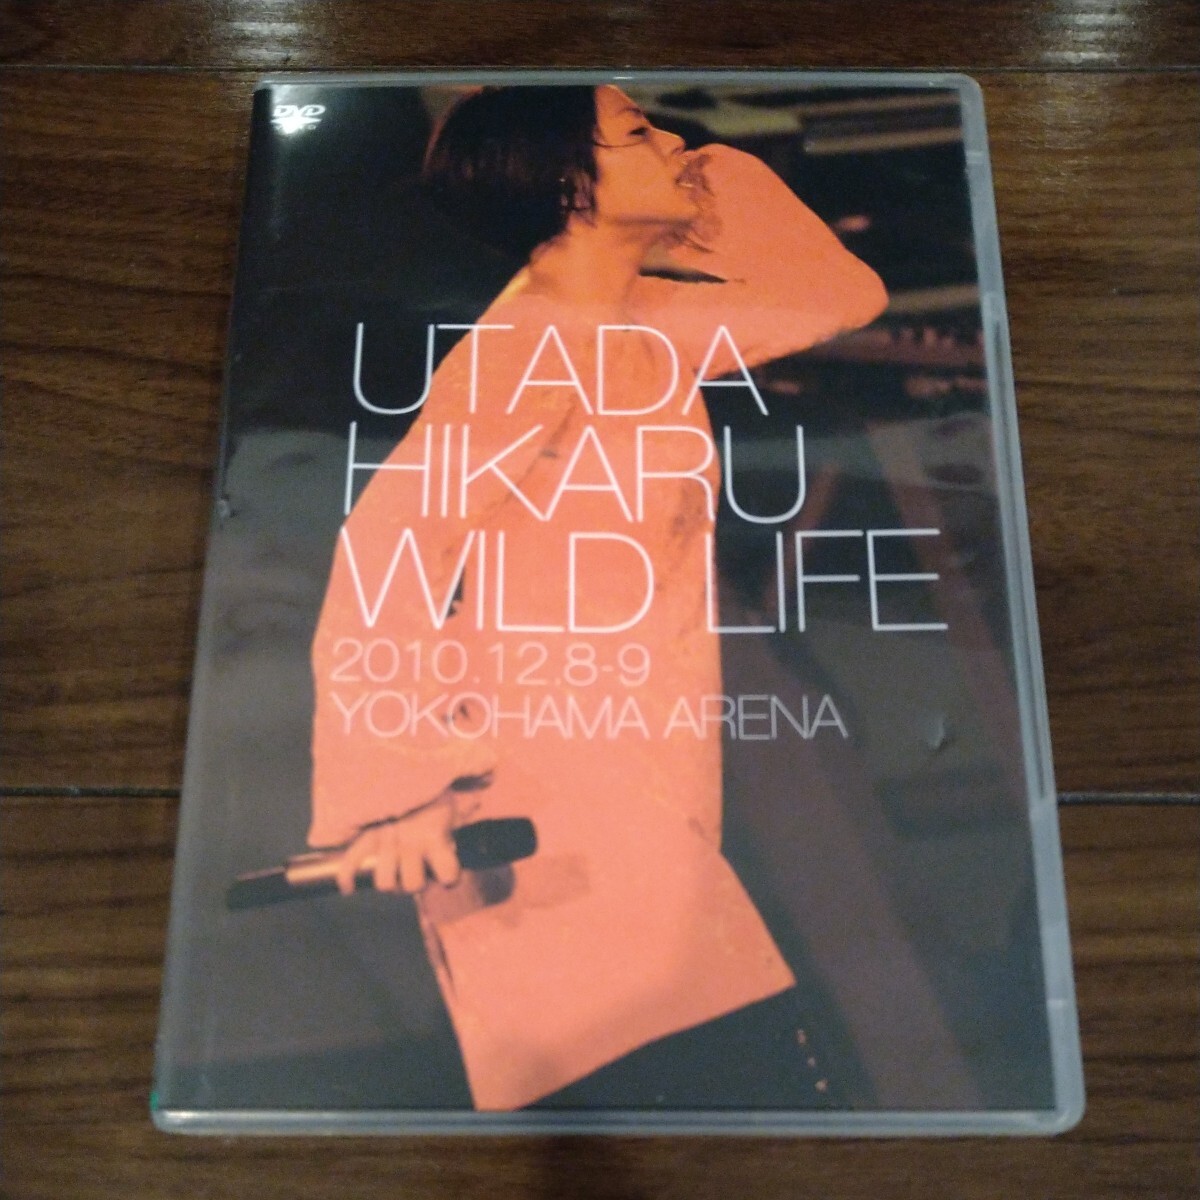 【送料無料】宇多田ヒカル DVD UTADA HIKARU WILD LIFE 2010.12.8-9 YOKOHAMA ARENA 2枚組 横浜アリーナ